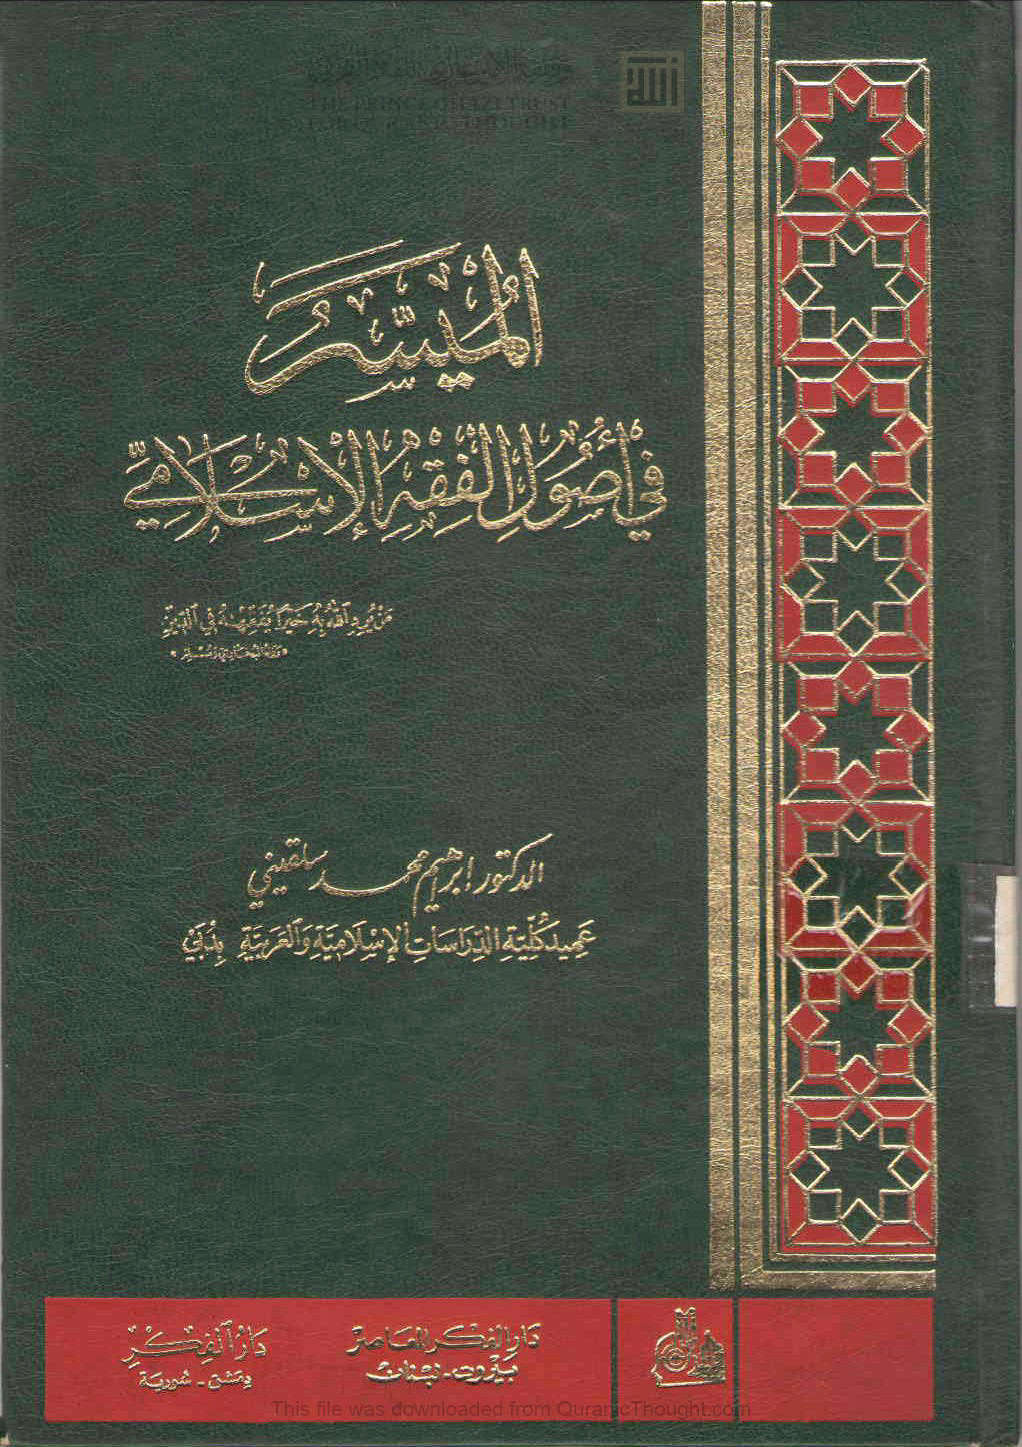 الميسر في أصول الفقه الإسلامي _ إبراهيم محمد سلقيني ( ط _ دار الفكر / الطبعة الثانية / الإصدار الثالث _ 1996م )